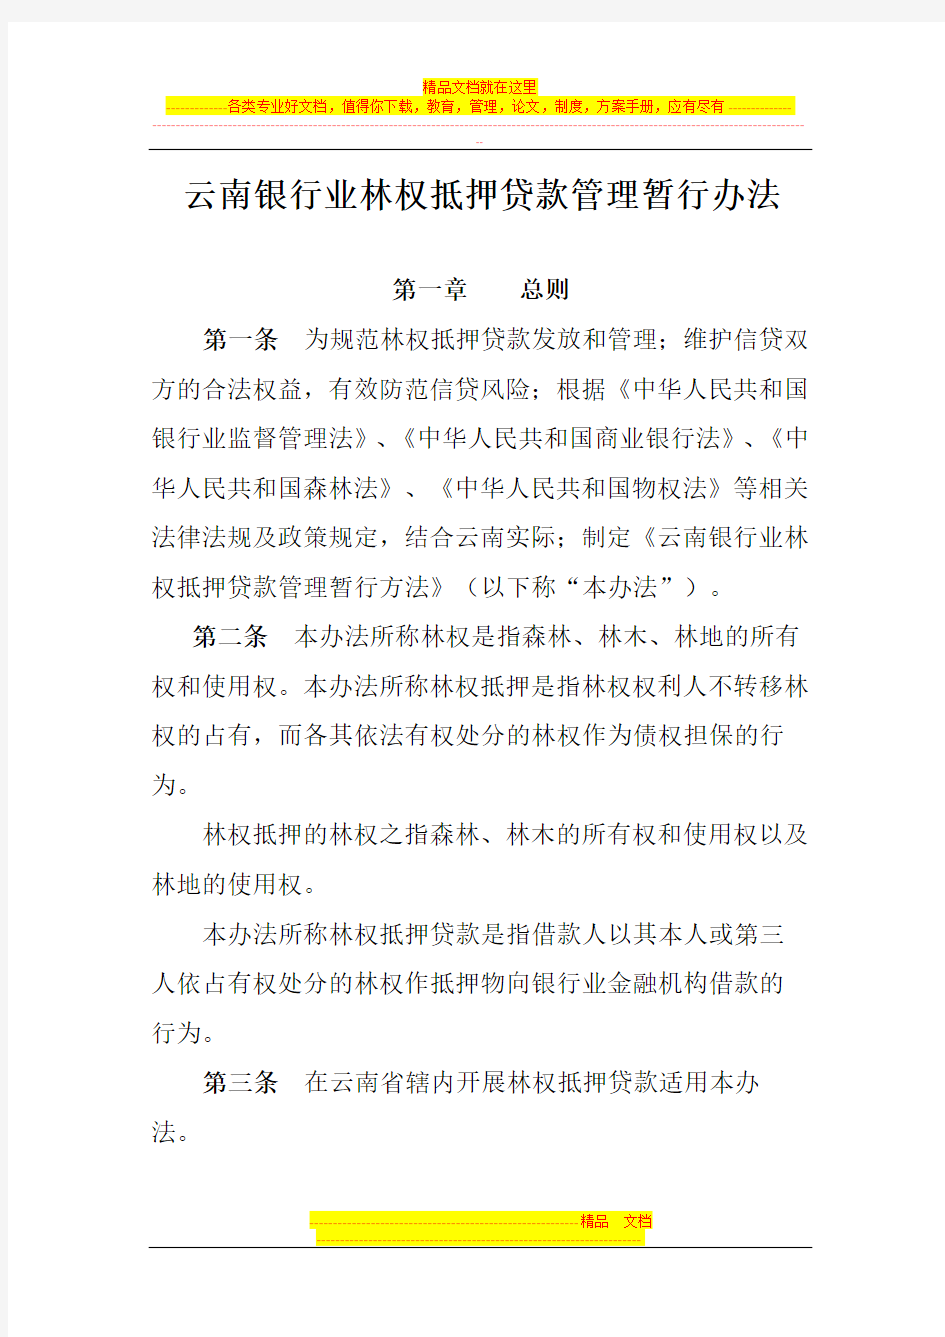 云南银行业林权抵押贷款管理暂行办法